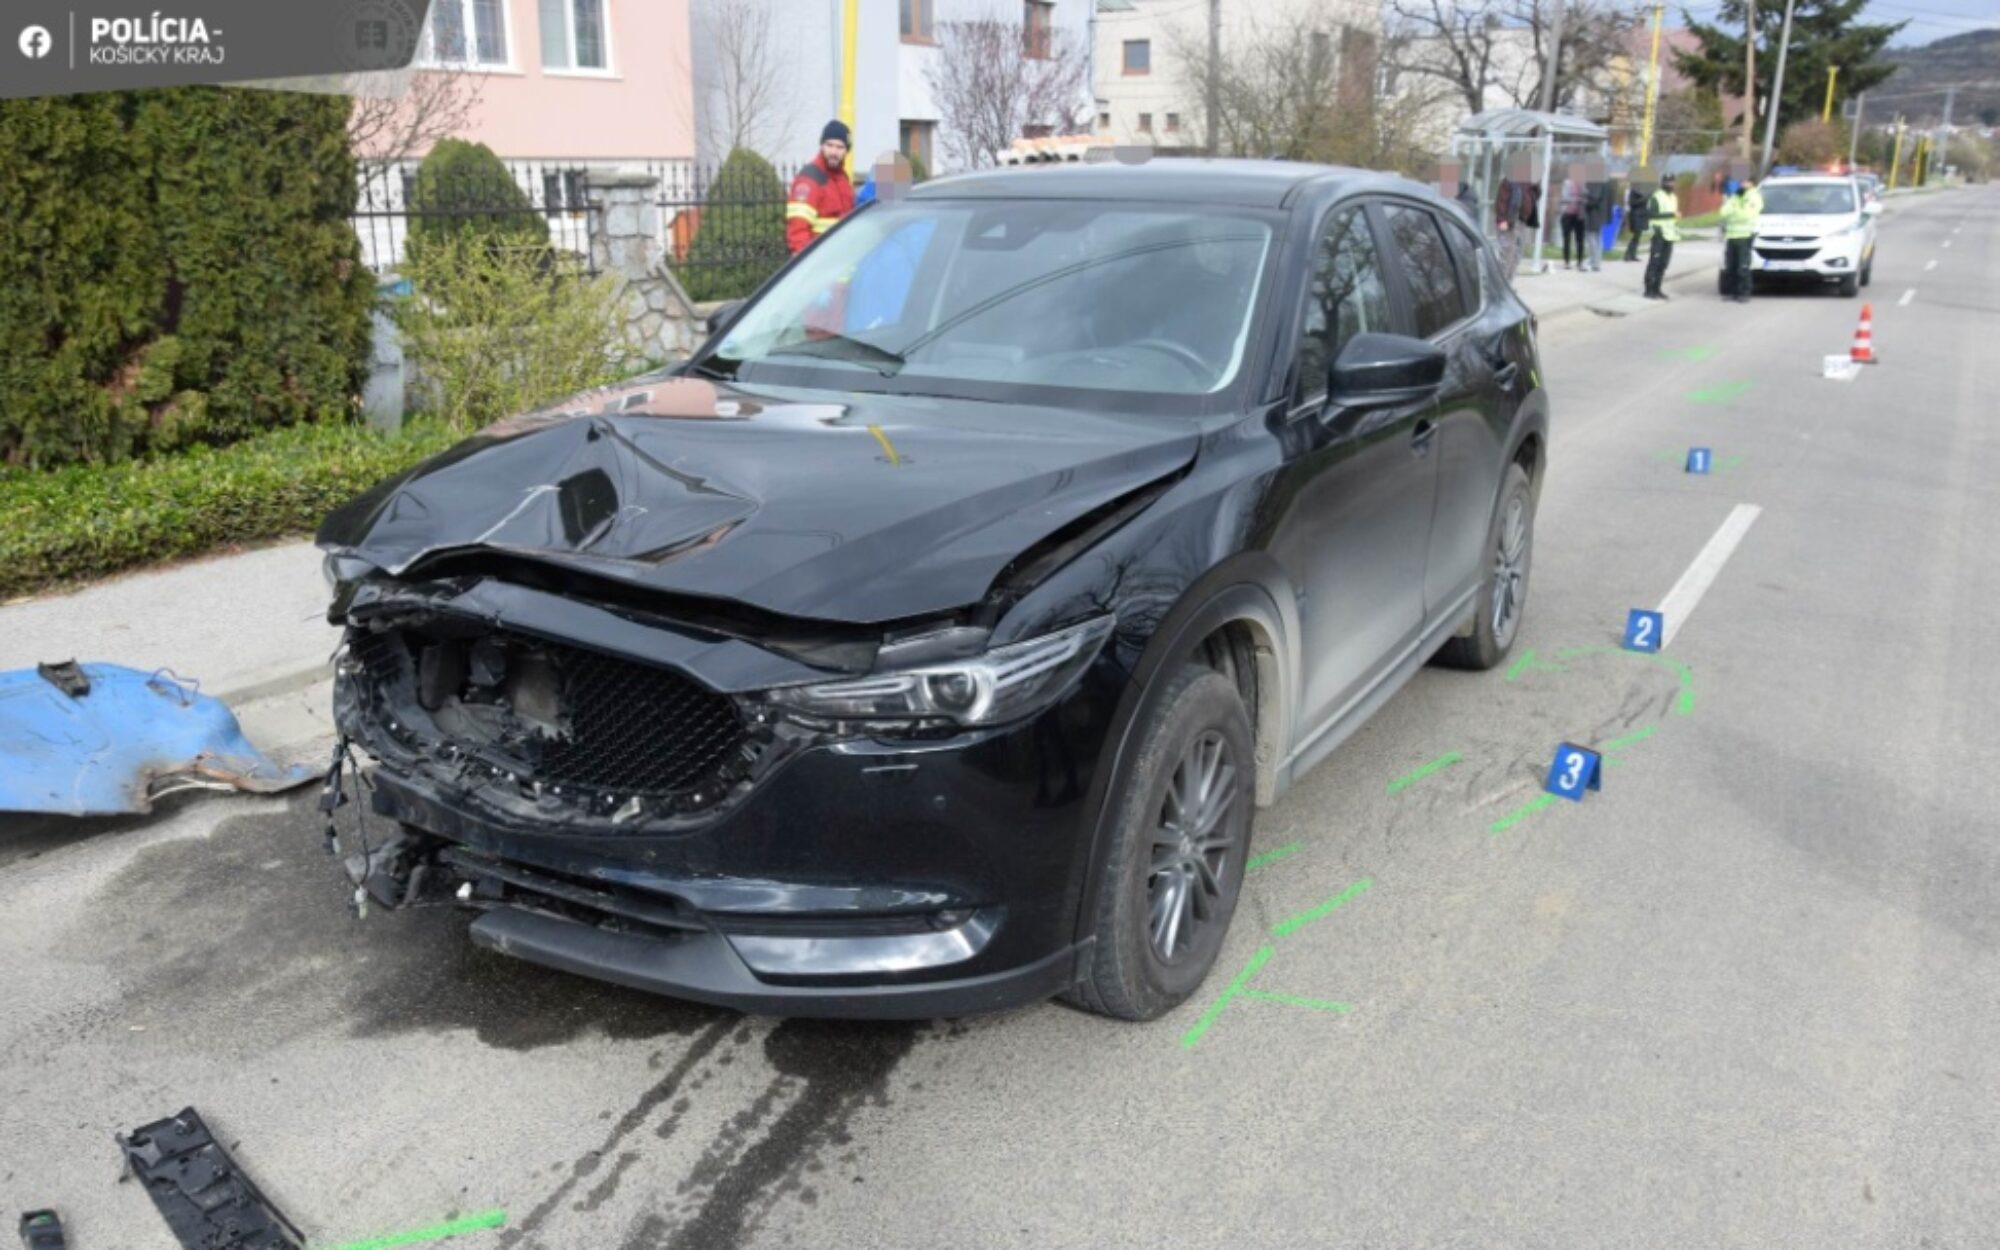 Tragická zrážka auta a traktoru, Sady nad Torysou. Zdroj: FB/Polícia SR